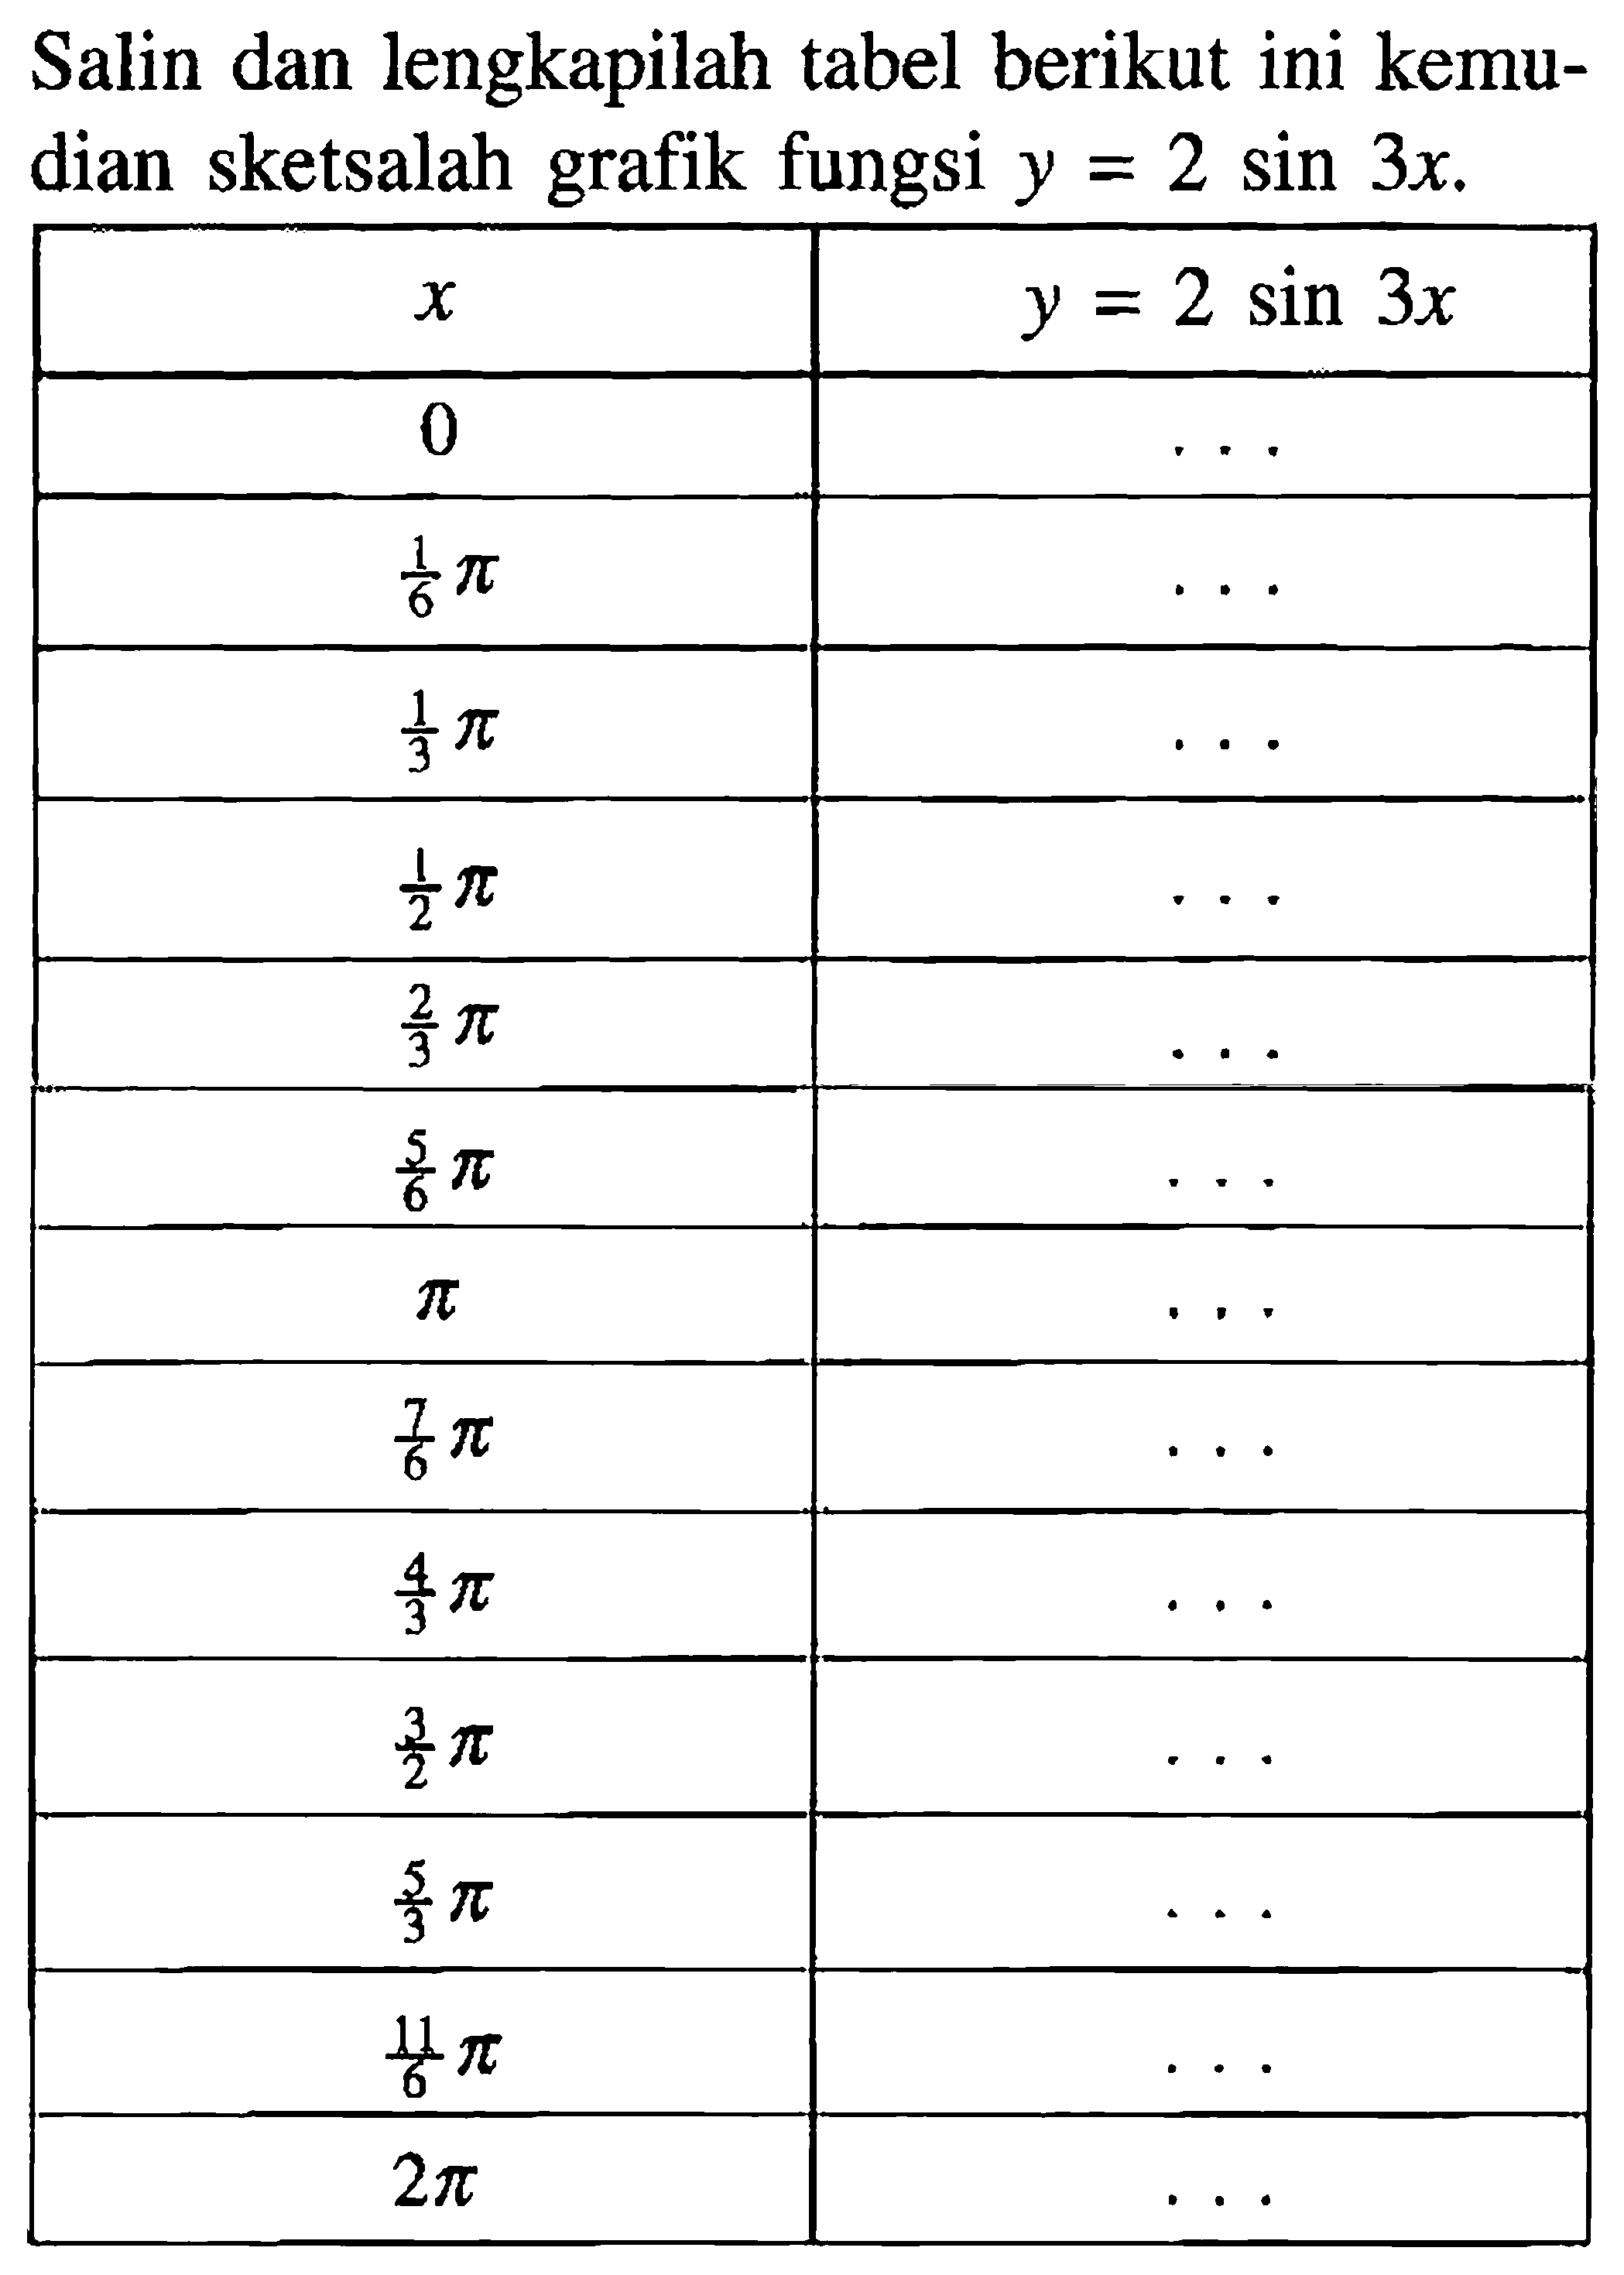 Salin dan lengkapilah tabel berikut ini kemudian sketsalah grafik fungsi y=2 sin 3x. x y=2 sin 3x 0 1/6 pi 1/3 pi 1/2 pi 2/3 pi 5/6 pi pi 7/6 pi 4/3 pi 3/2 pi 5/3 pi 11/6 pi 2 pi